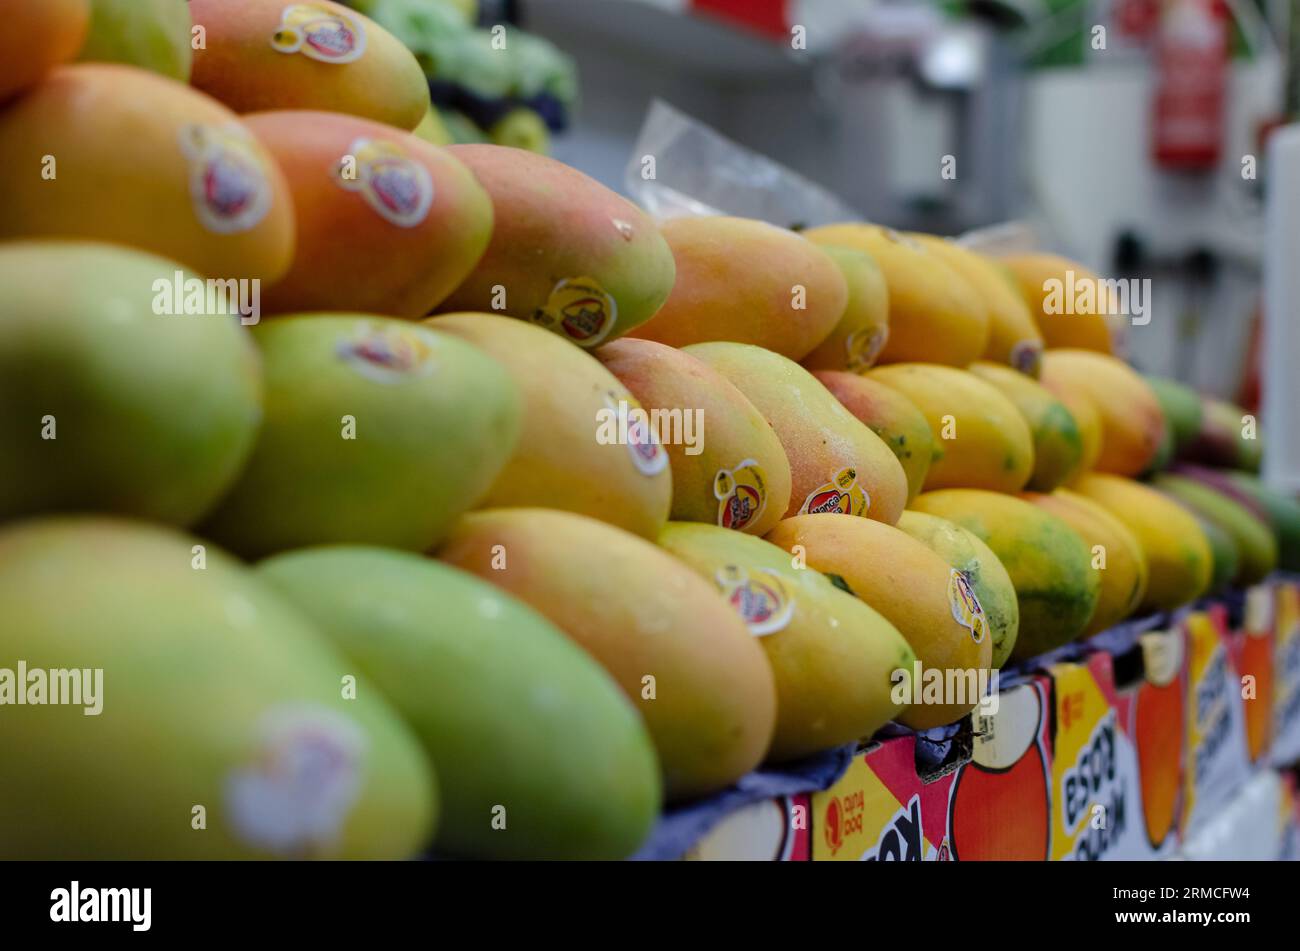 Gruppo di papaie gialle in vendita in un negozio di frutta. Salvador, Bahia. Foto Stock